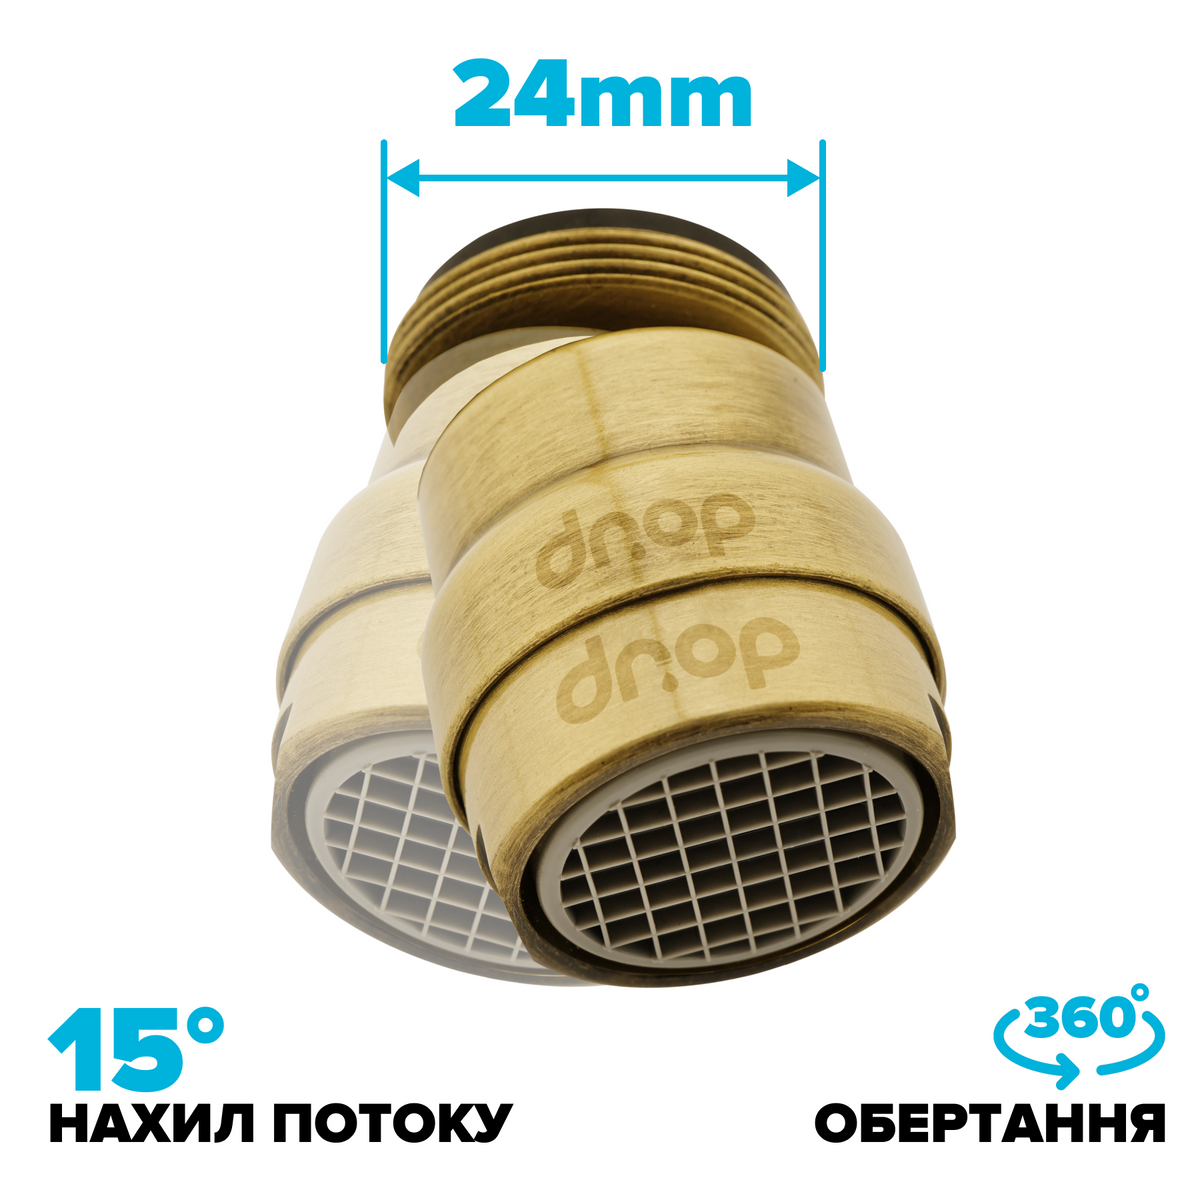 Поворотный 360° адаптер DROP COLOR CL360-BRN внешняя резьба 24 мм угол 15° латунь цвет бронзовый